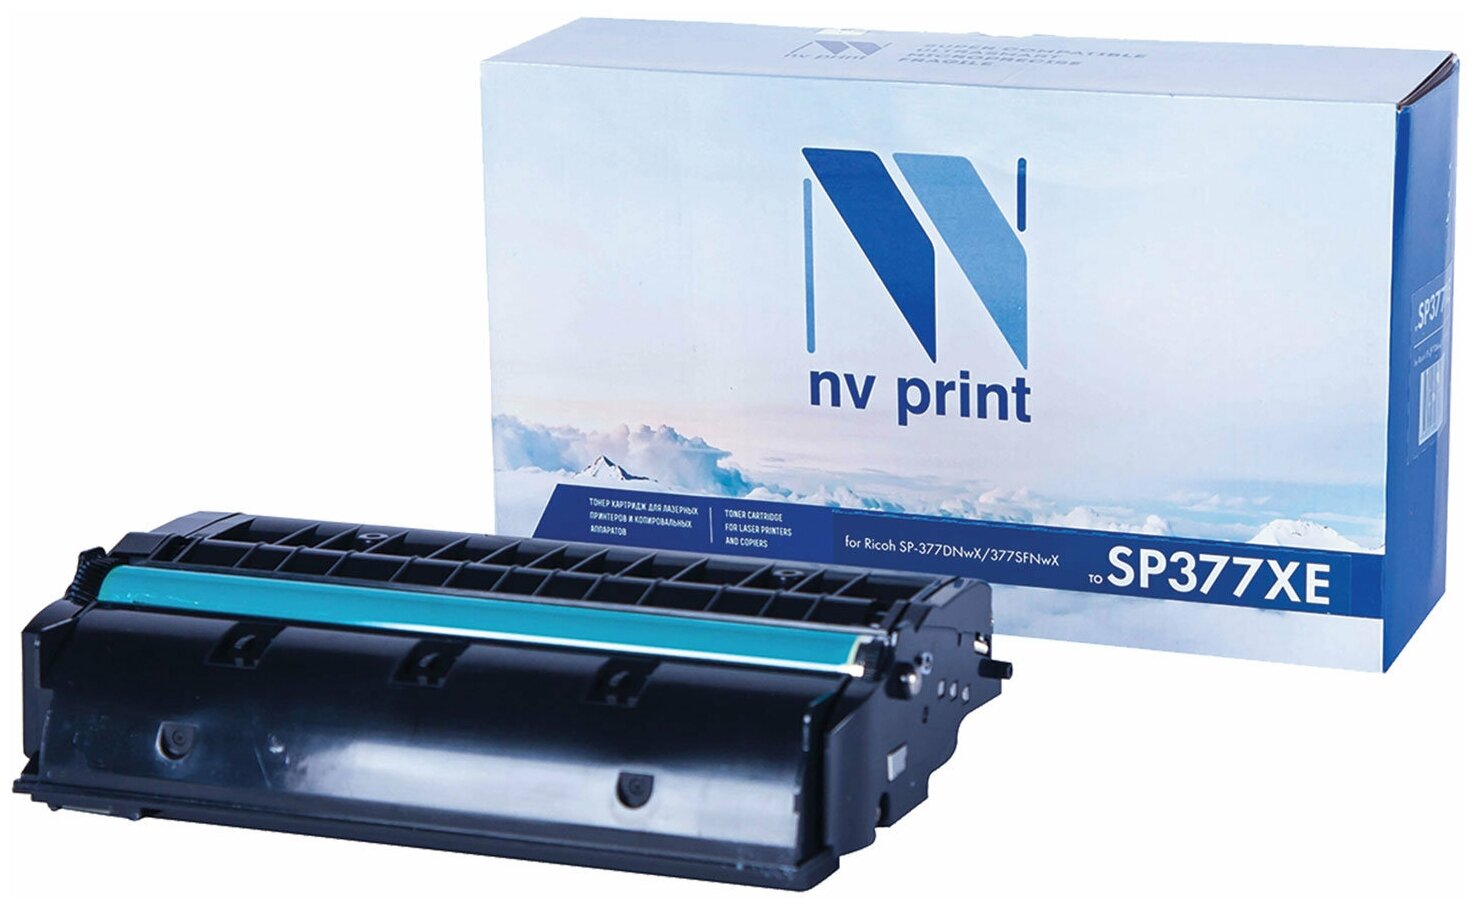 Картридж для лазерных принтеров NV PRINT для Ricoh SP-377DNwX, 377SFNwX, 6400 страниц NV-SP377XE